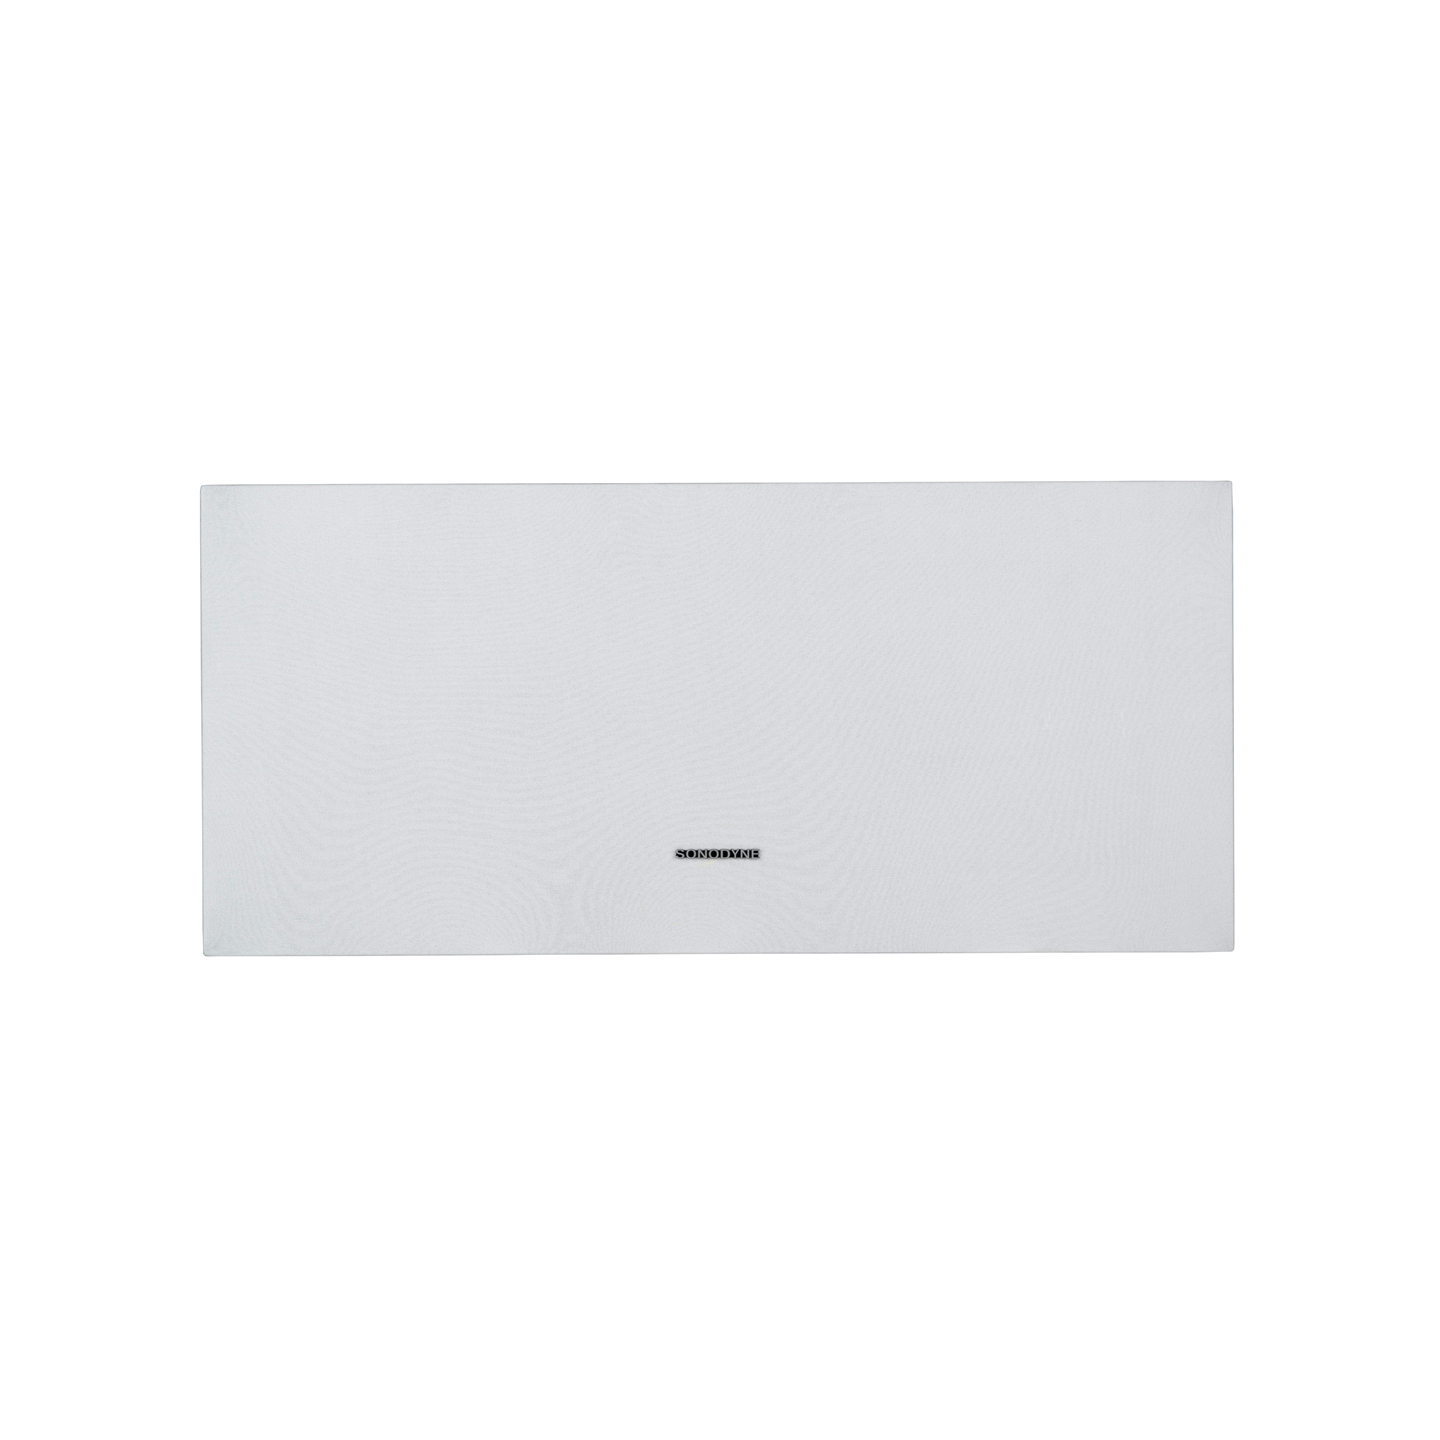 Sonodyne-IWO-521-white-front